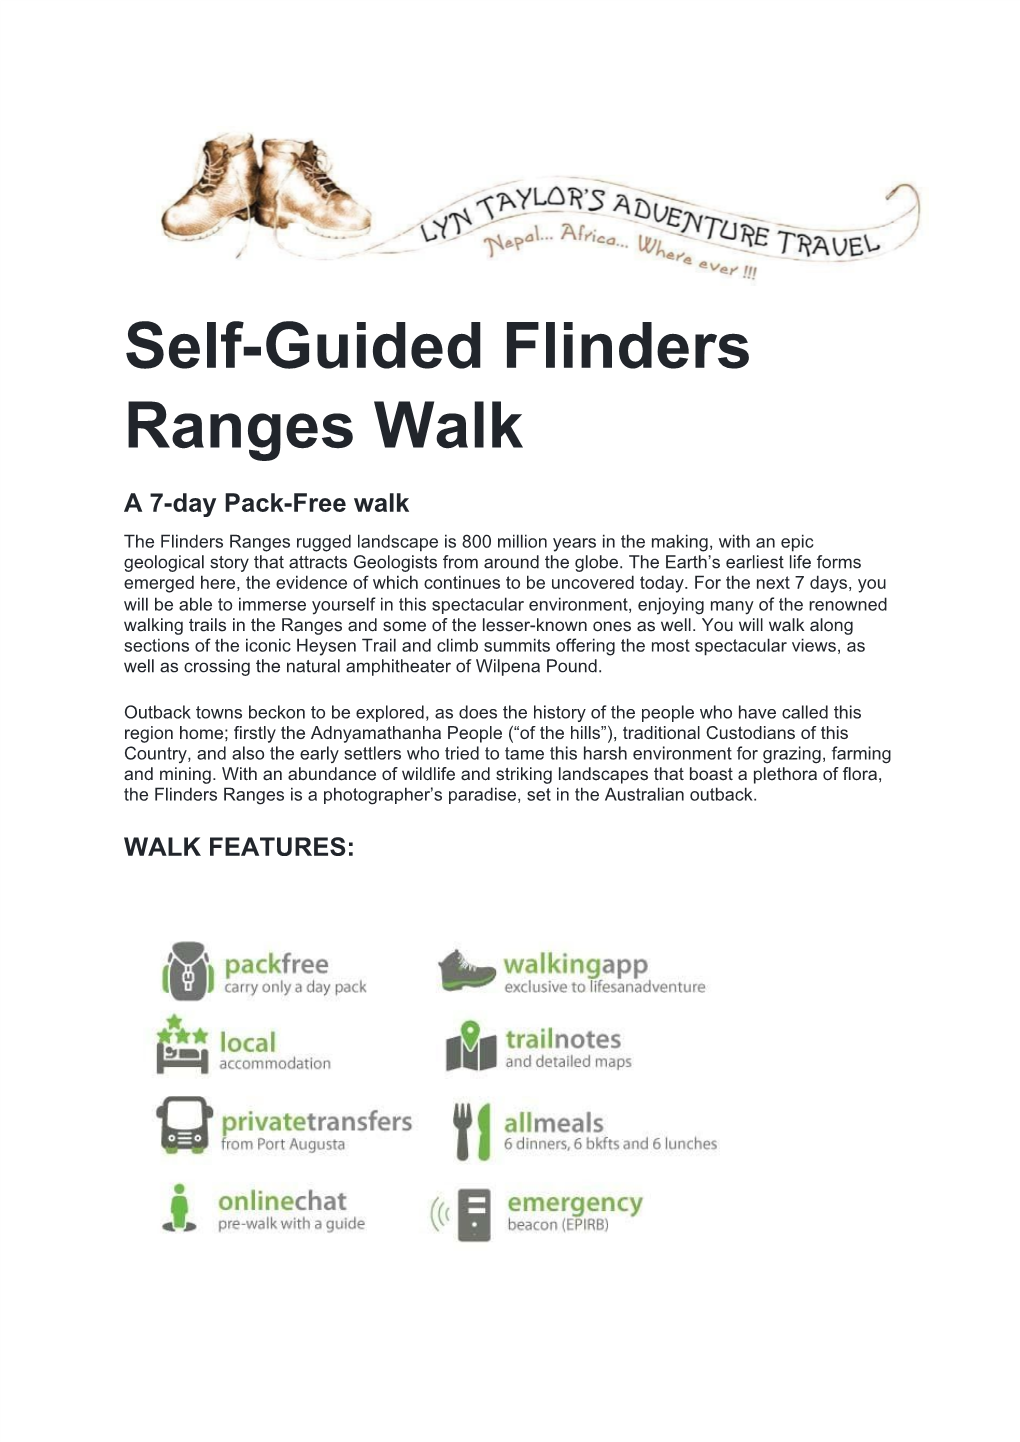 Self-Guided Flinders Ranges Walk